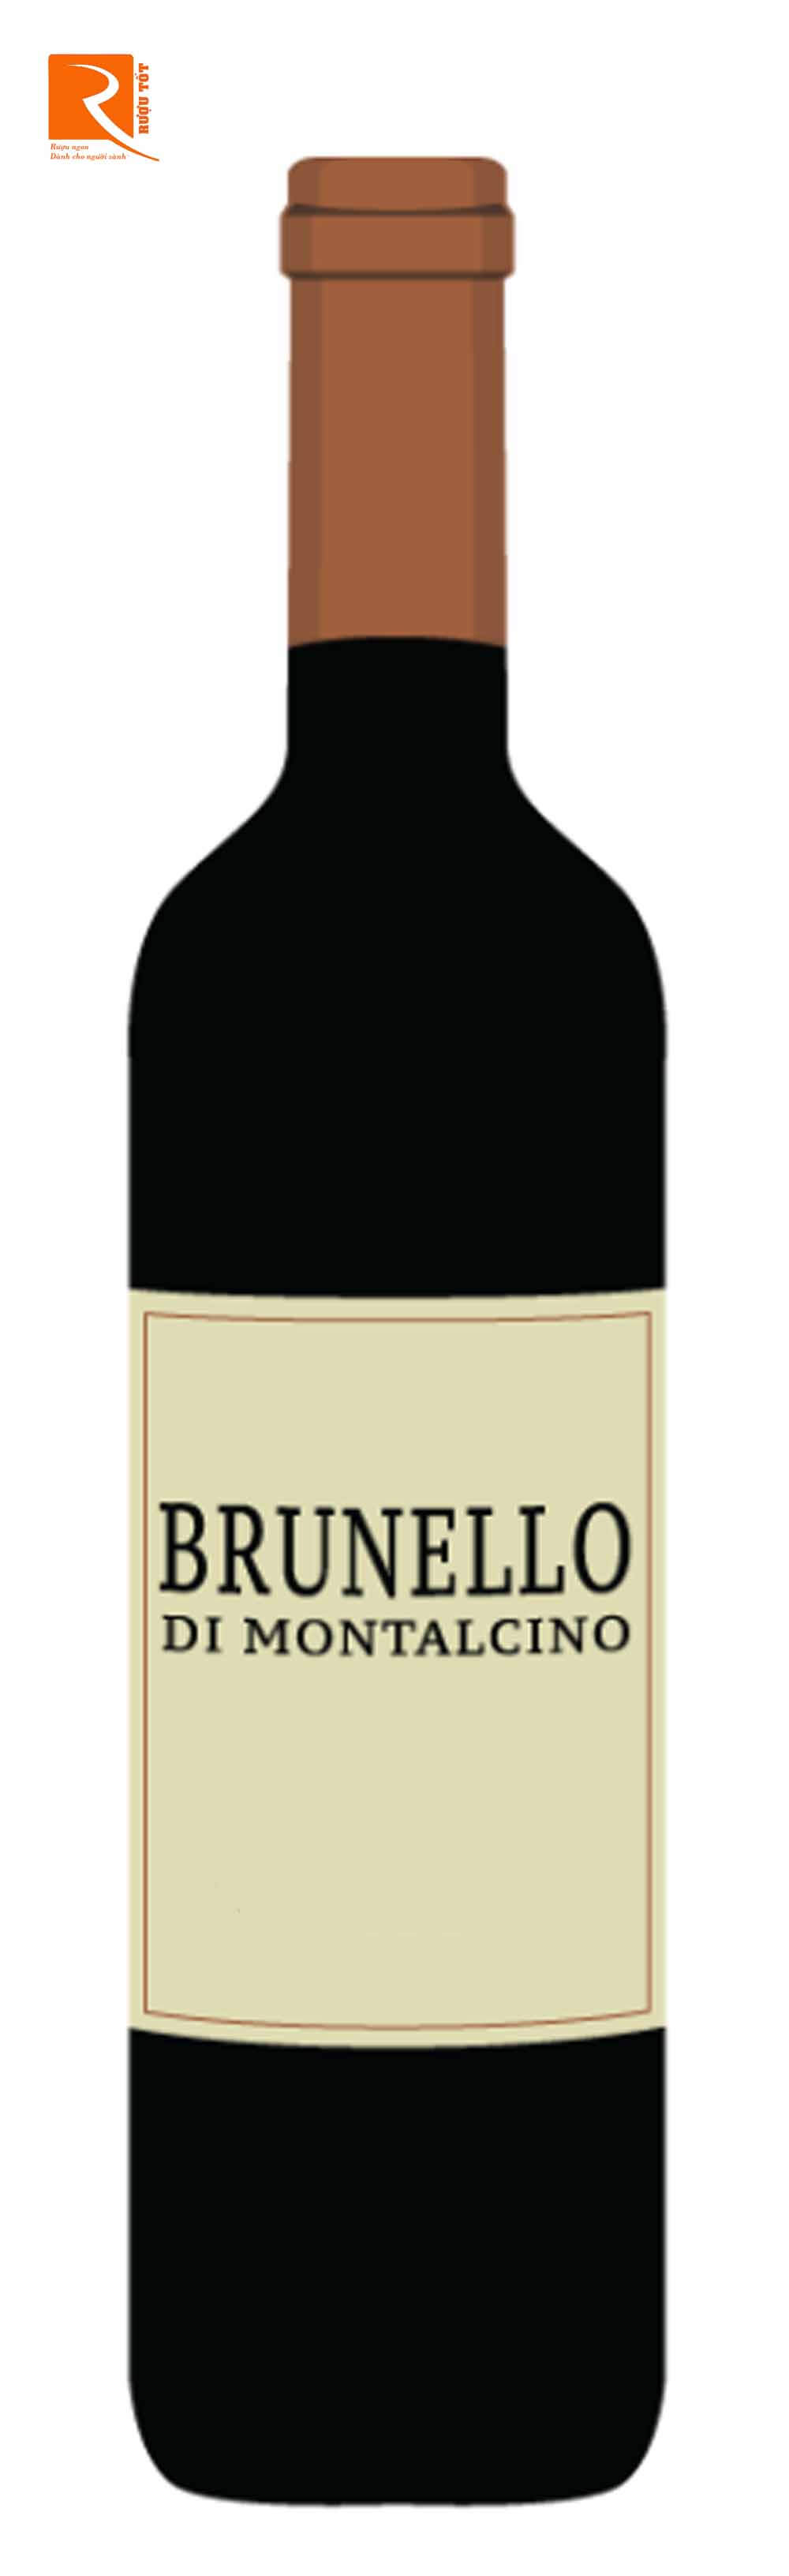 Barolo là một loại rượu vang đỏ có tuổi tannin được sản xuất ở Tây Bắc Ý.